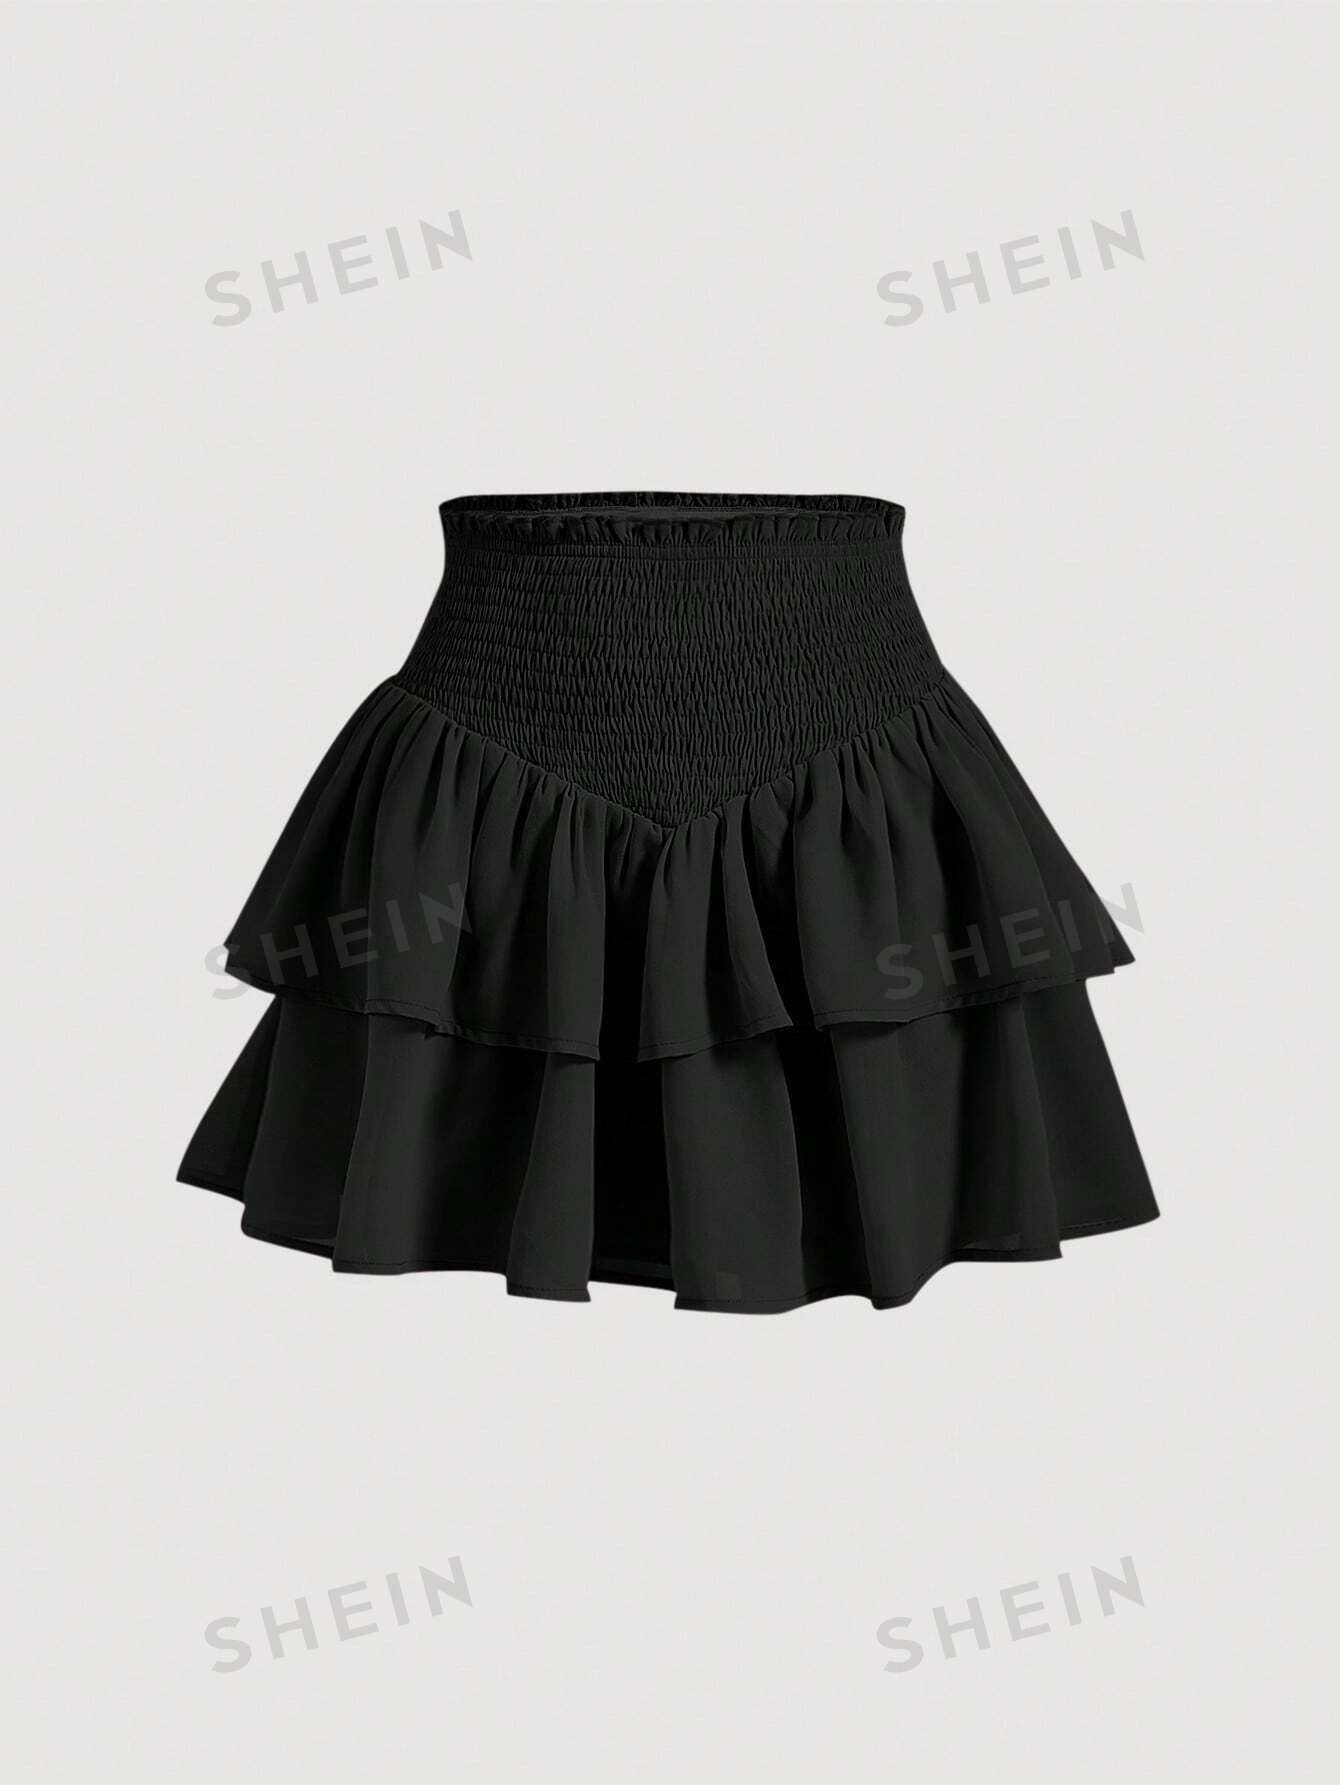 SHEIN MOD SHEIN MOD женская двухслойная мини-юбка с асимметричным подолом и рюшами и присборенной талией, черный юбка черная красивая 42 размер